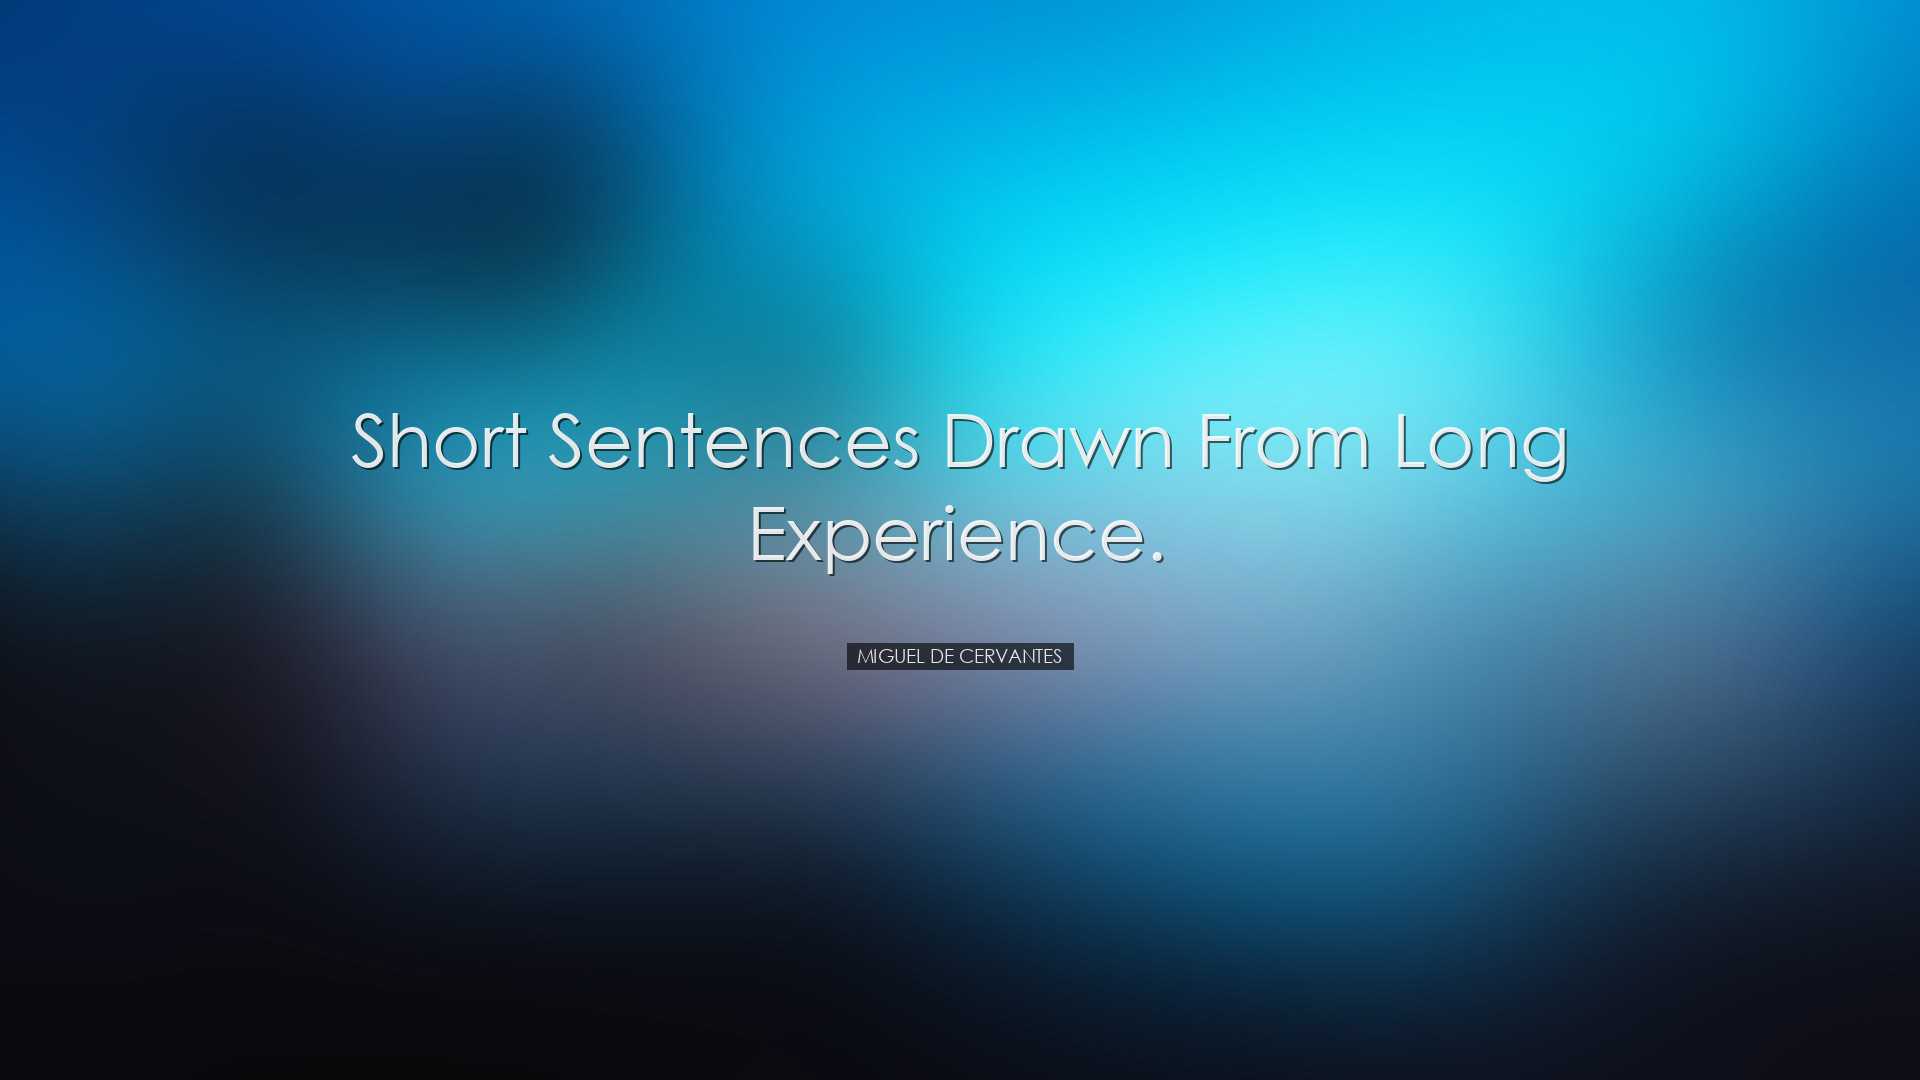 Short sentences drawn from long experience. - Miguel de Cervantes